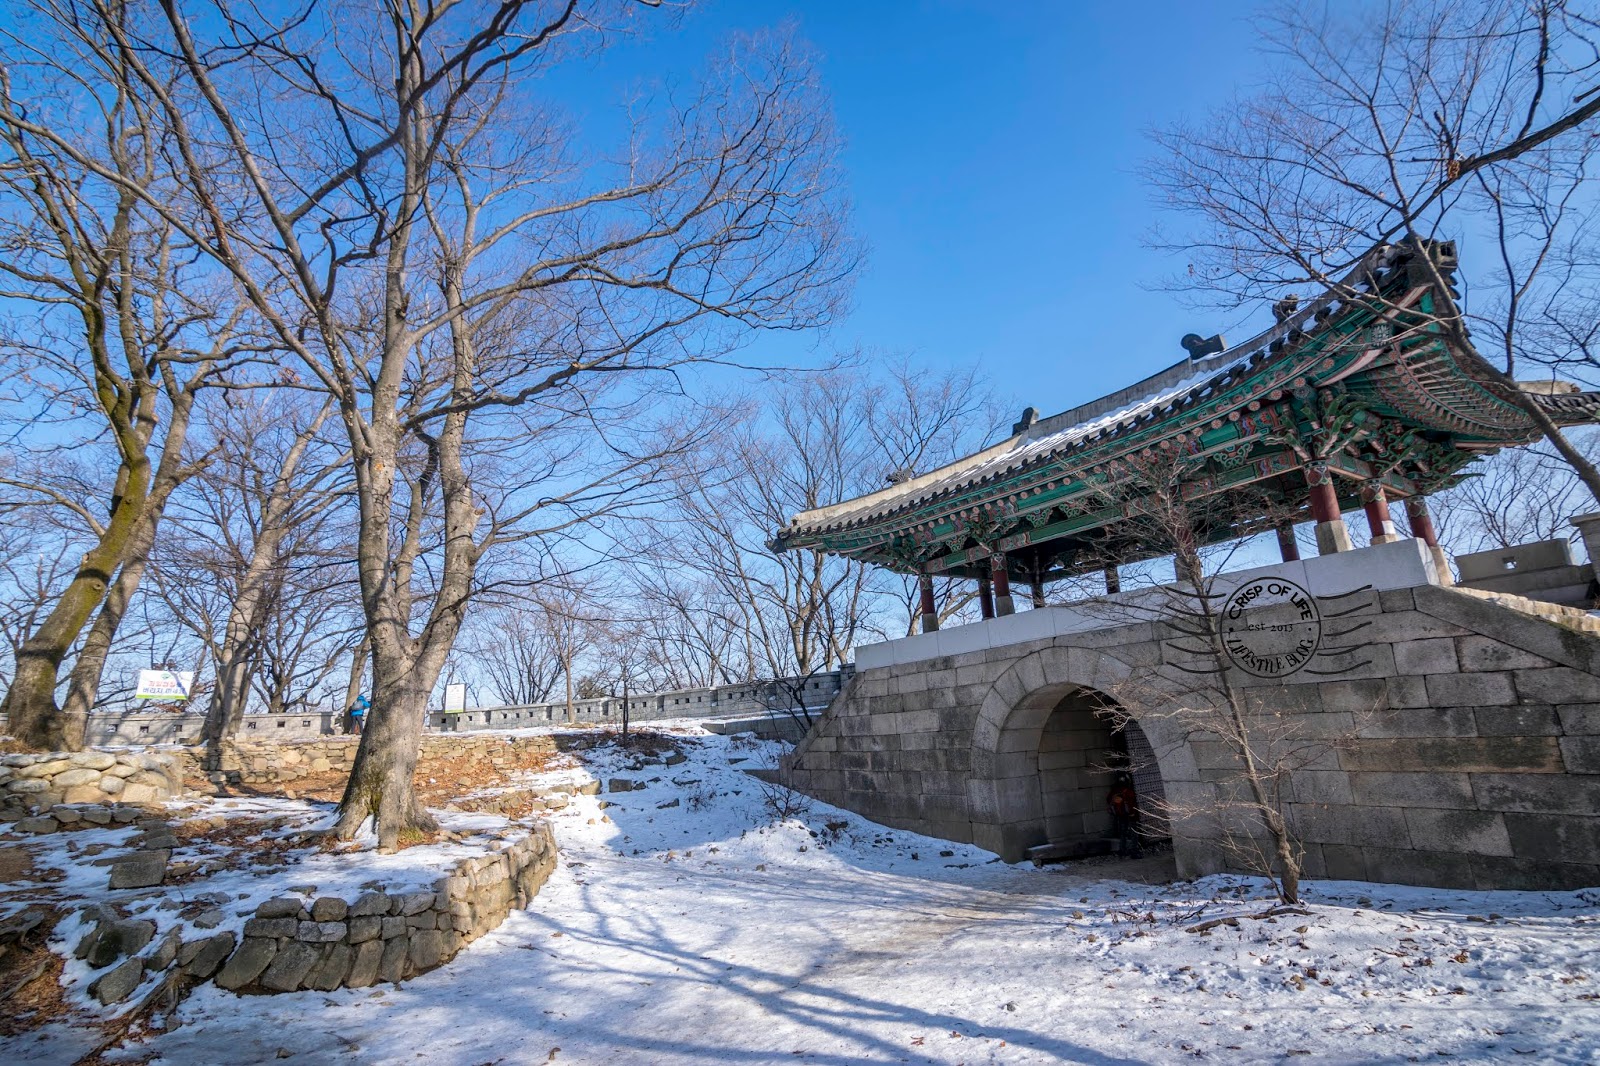 Bukhansan National Park Winter Hike @ Seoul, South Korea